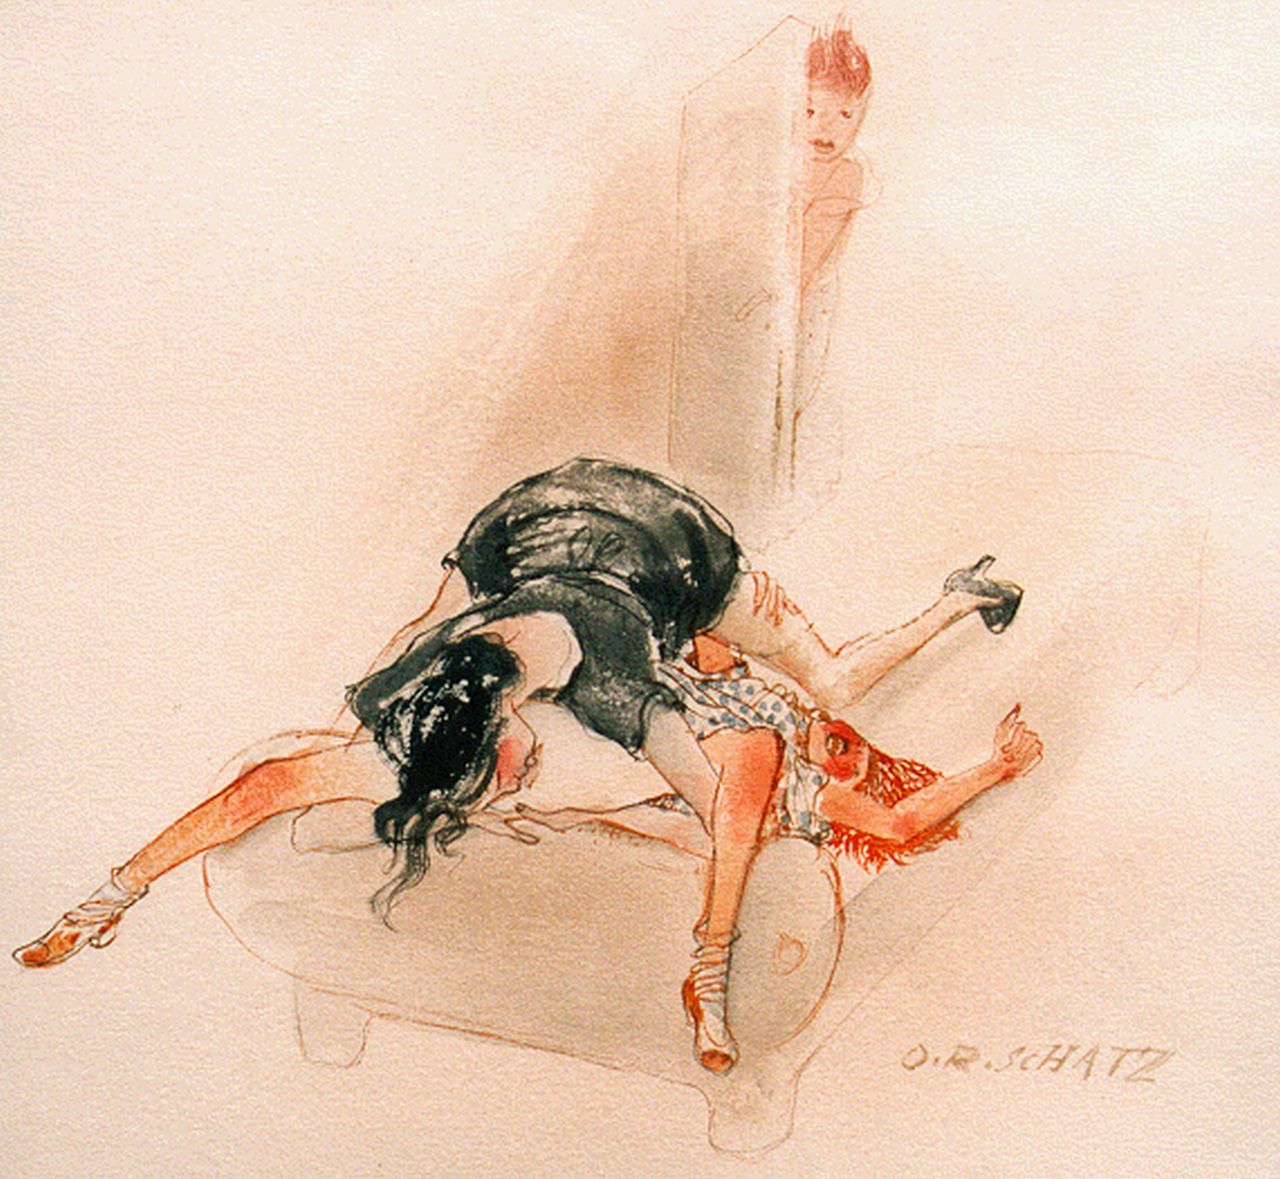 Schatz O.R.  | Otto Rudolf Schatz, Erotische scene, watercolour on paper 29.0 x 27.0 cm, gesigneerd linksonder